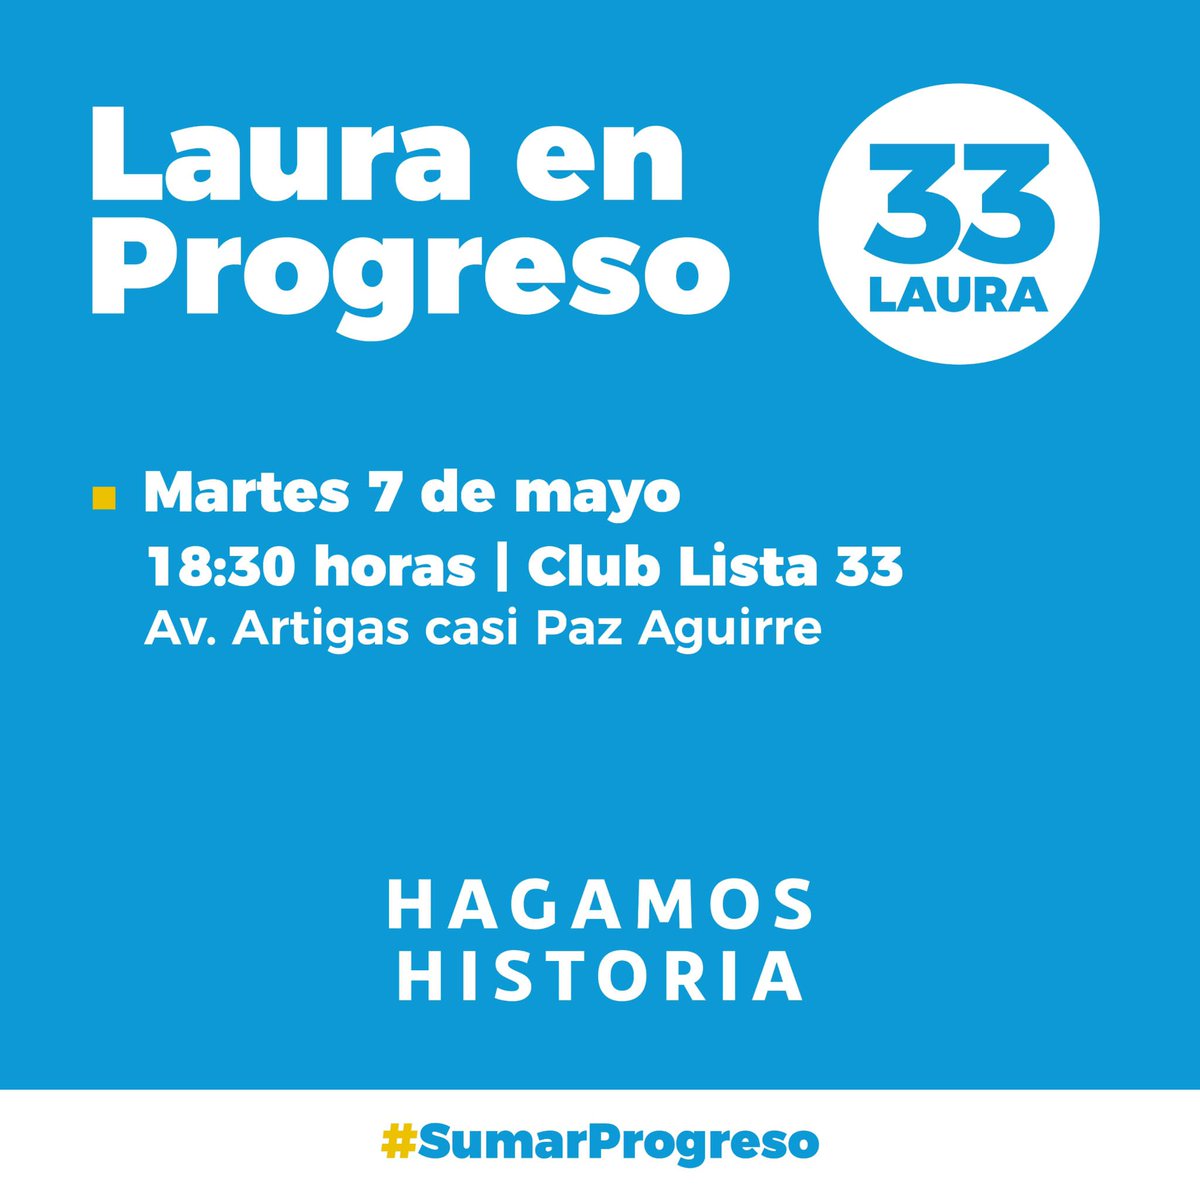 Sigue la recorrida de @lauraraffo por Canelones. Mañana le toca el turno a #Progreso. Te sumas? 

#Sumar #HagamosHistoria